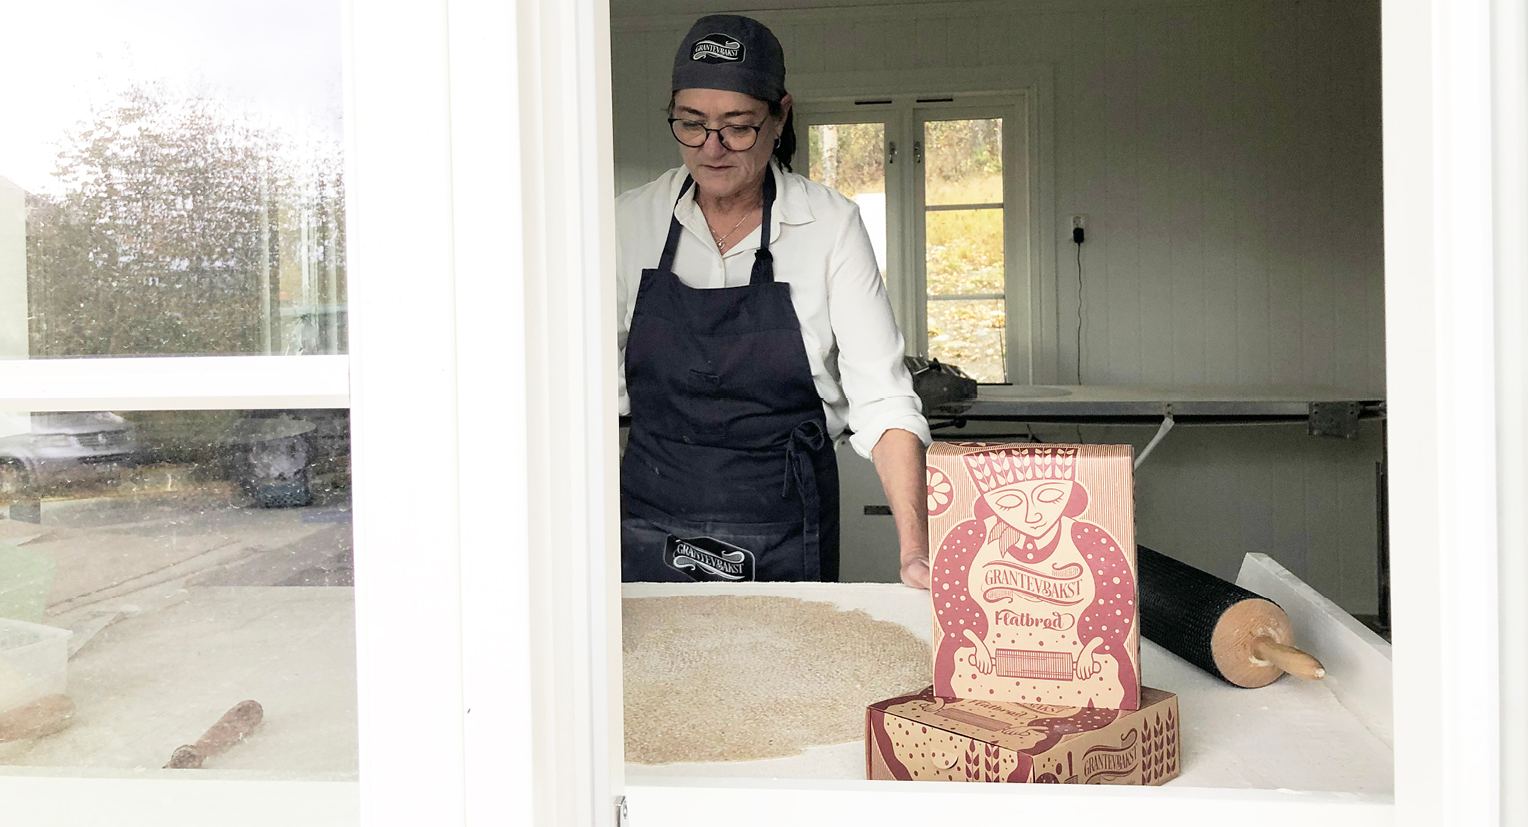 Bilde av bakstekona Jorun hvor hun baker, med embalalsje foran. Emballasjen laget av Haus